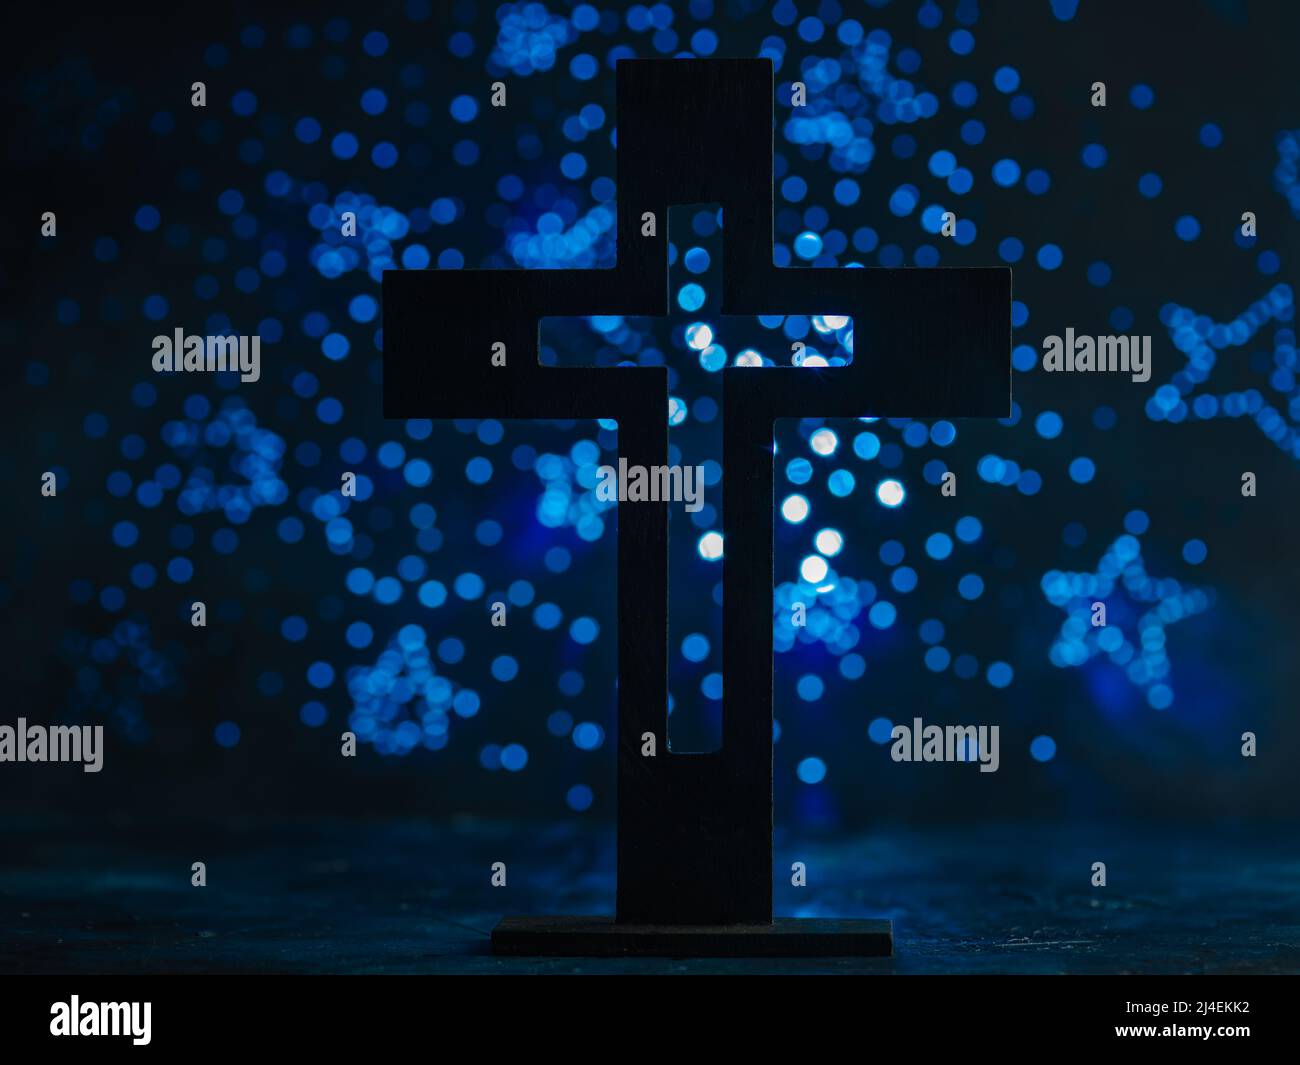 Grande croix catholique sur fond bleu foncé avec étoiles scintillantes. Religion, Christianisme, Catholicisme, foi, spiritualité, prière, amour, pardon Banque D'Images